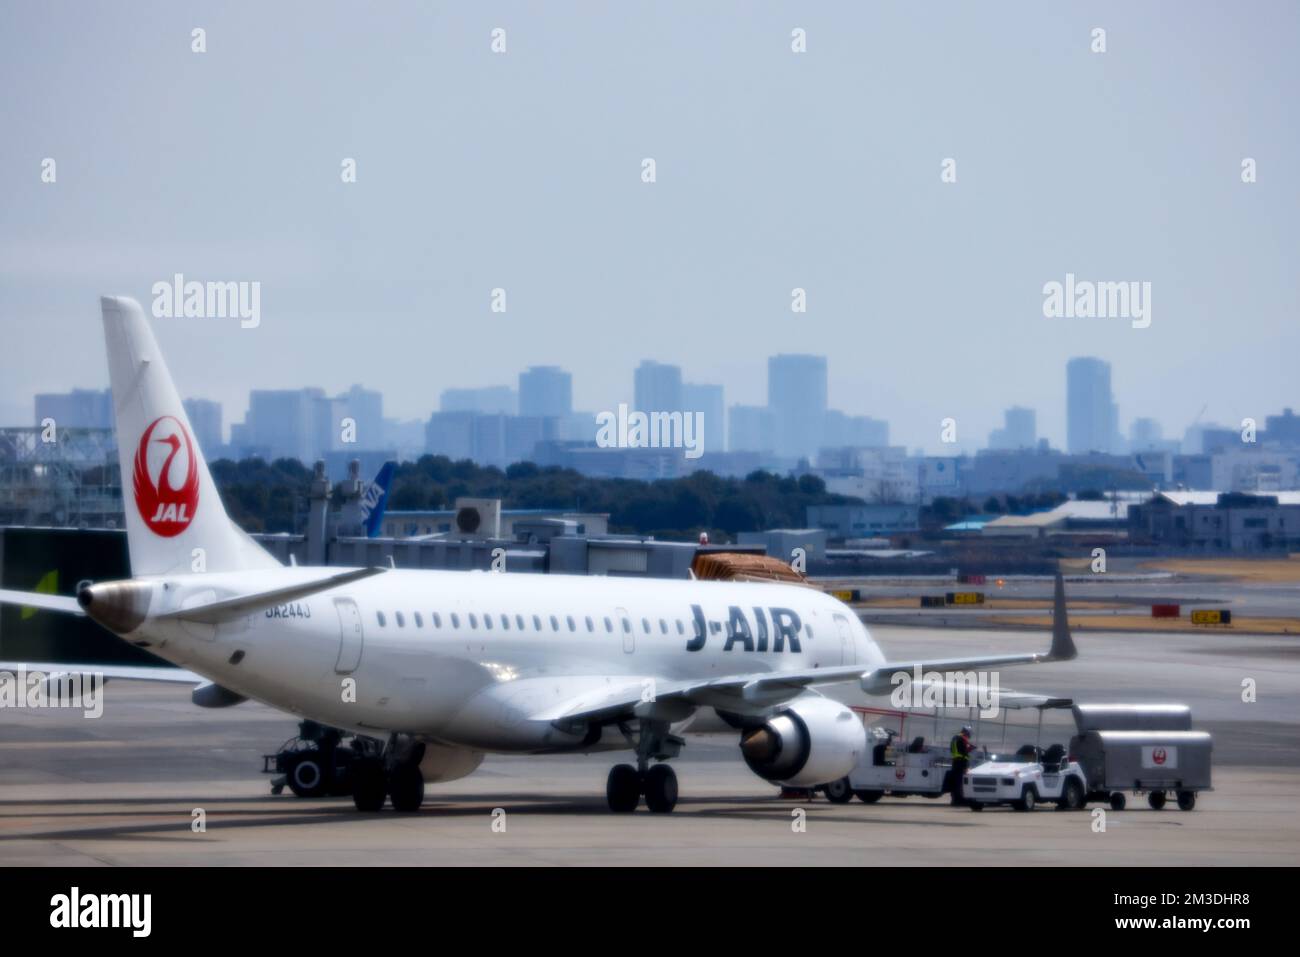 Tokio, Japan - 9. November 2022: Japan Airlines fliegt auf Asphalt mit Hilfsfahrzeugen und Skyline der Stadt durch Dunst sichtbar Stockfoto